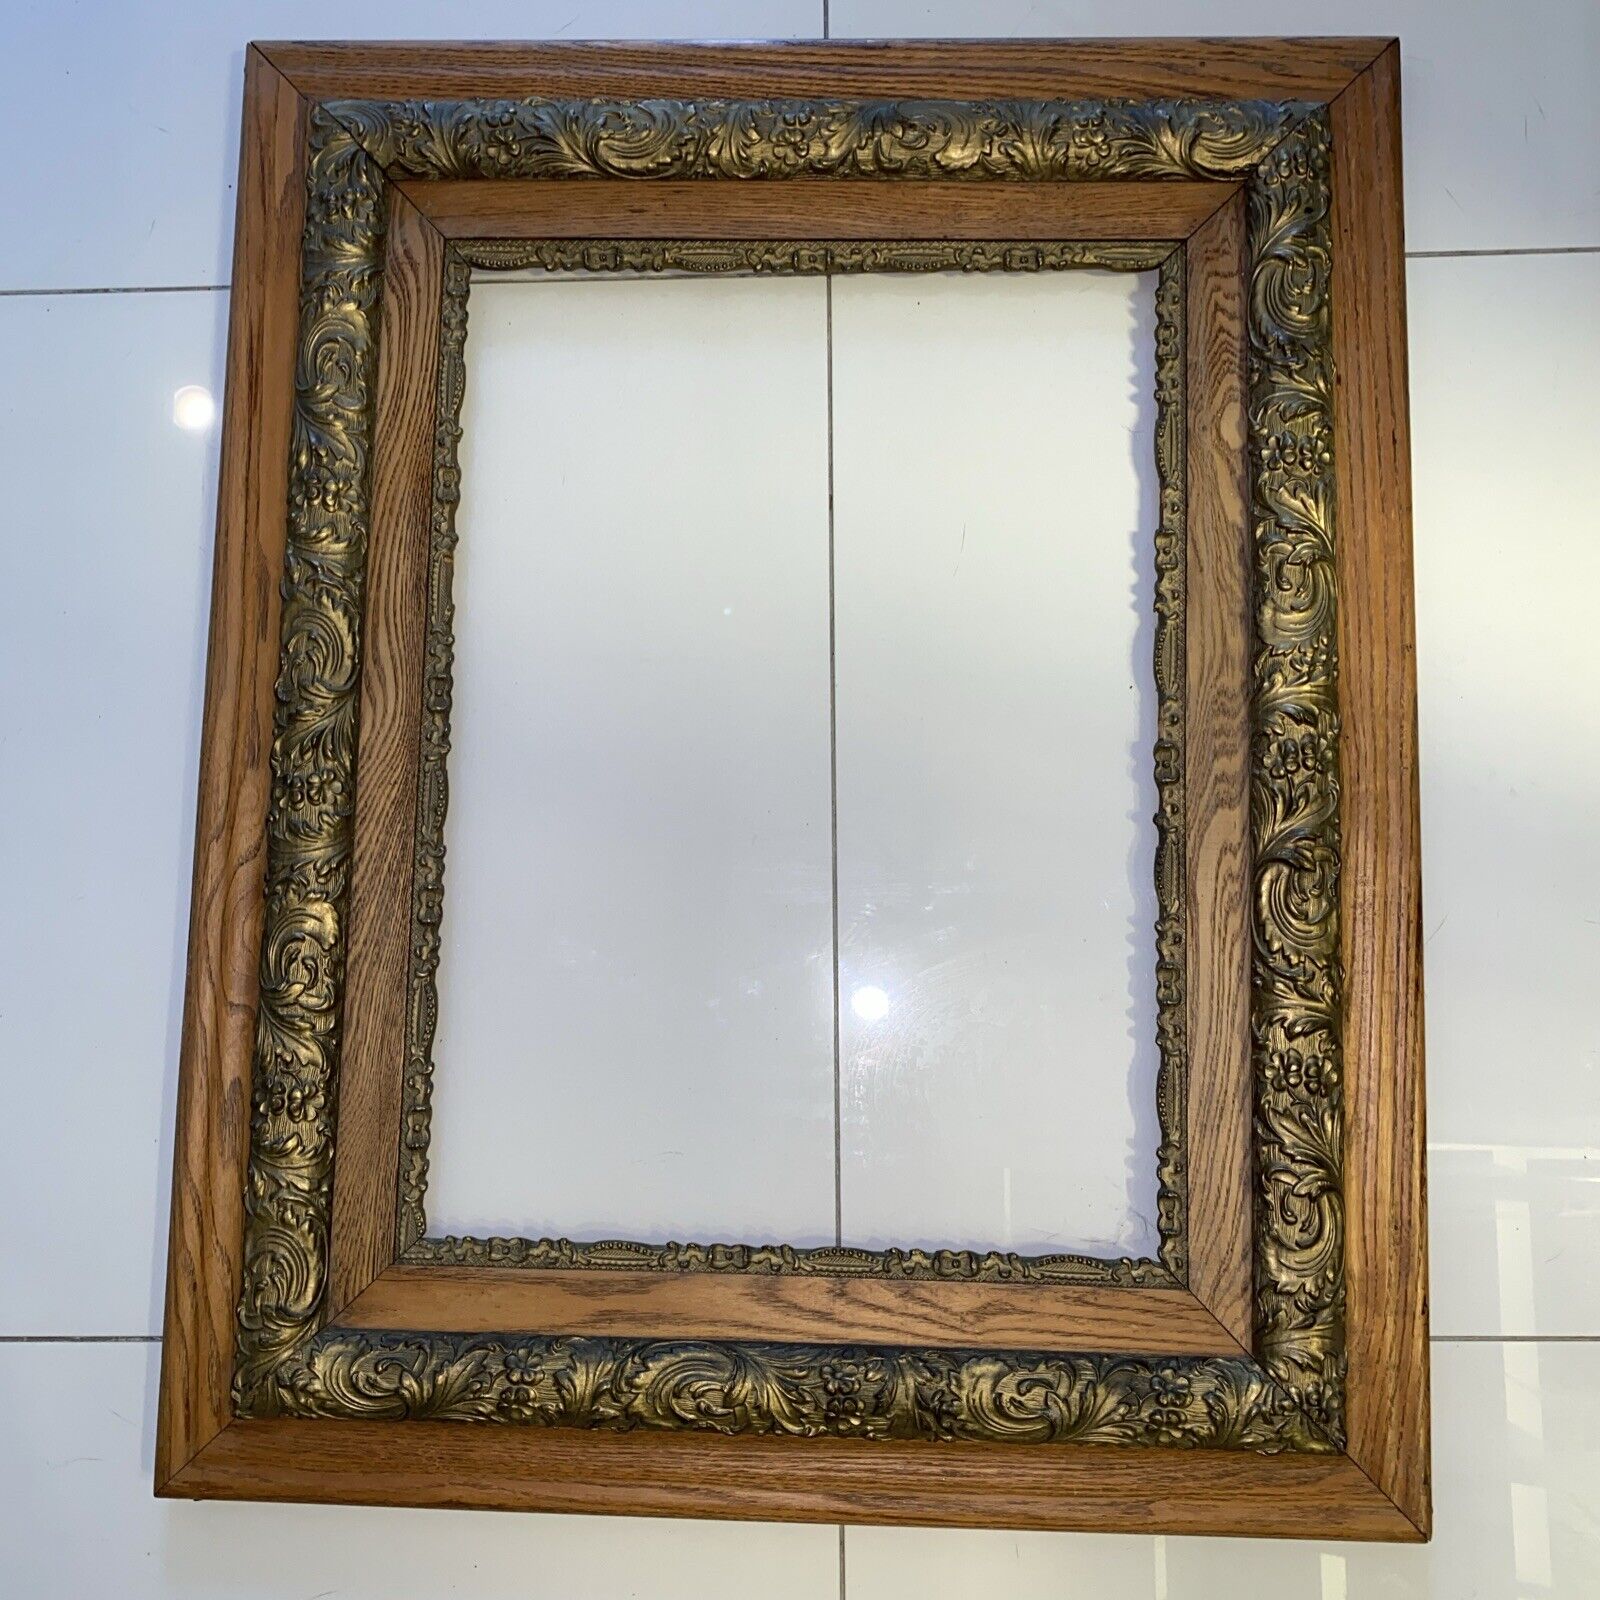 Antique Ornate Wood Frame 26”x 32 Carved Large Gold Artwork 16” x 22” Brass